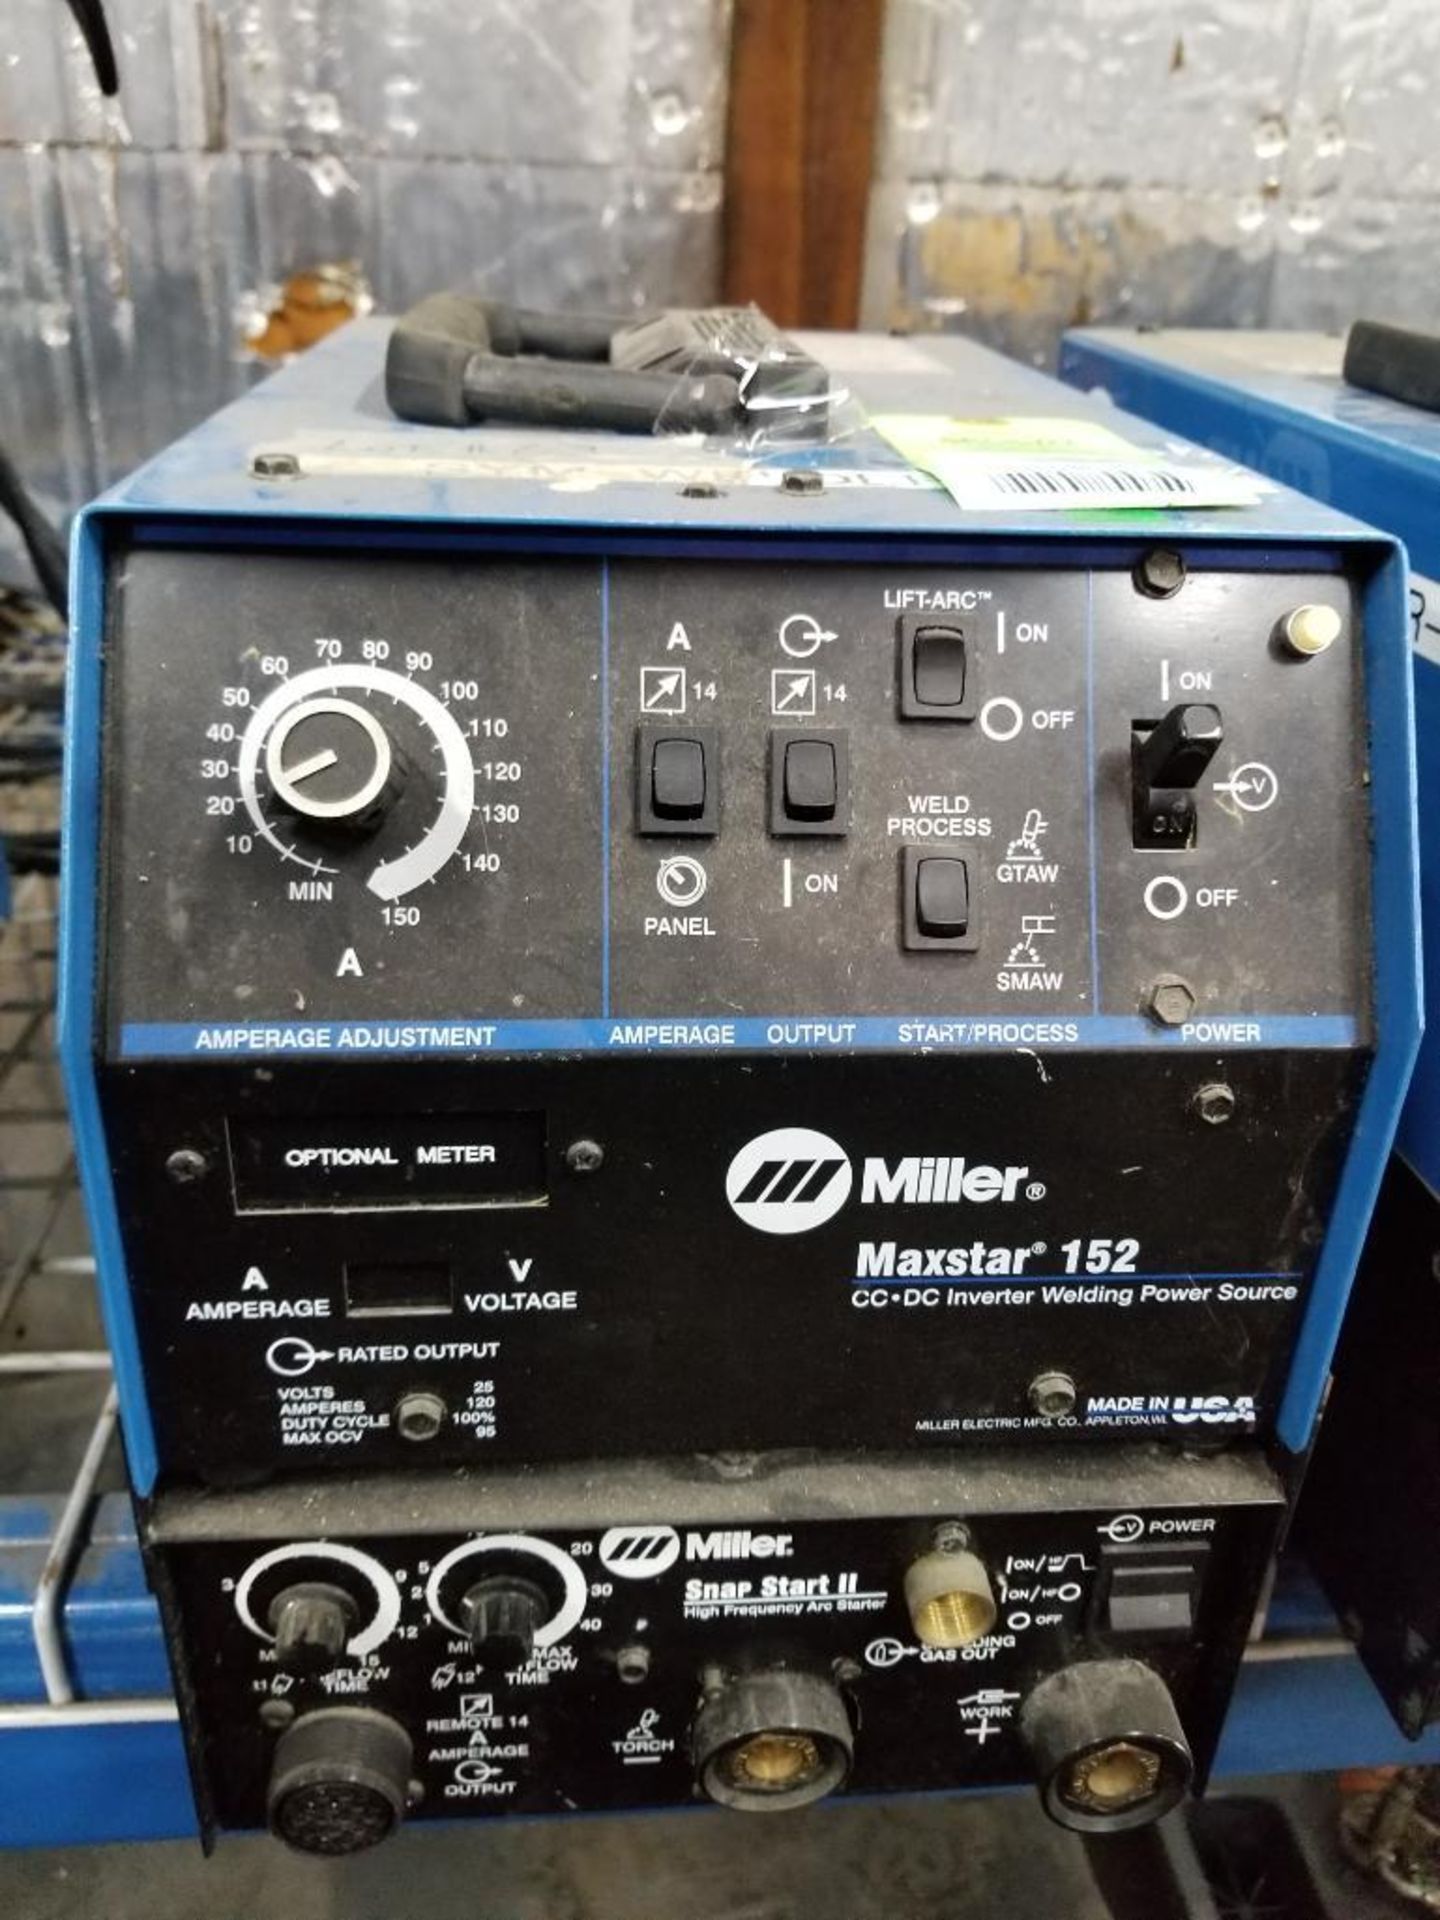 Miller Maxstar 152 CC/DC inverter welding power source. 115/230v single phase. Snapstart II.